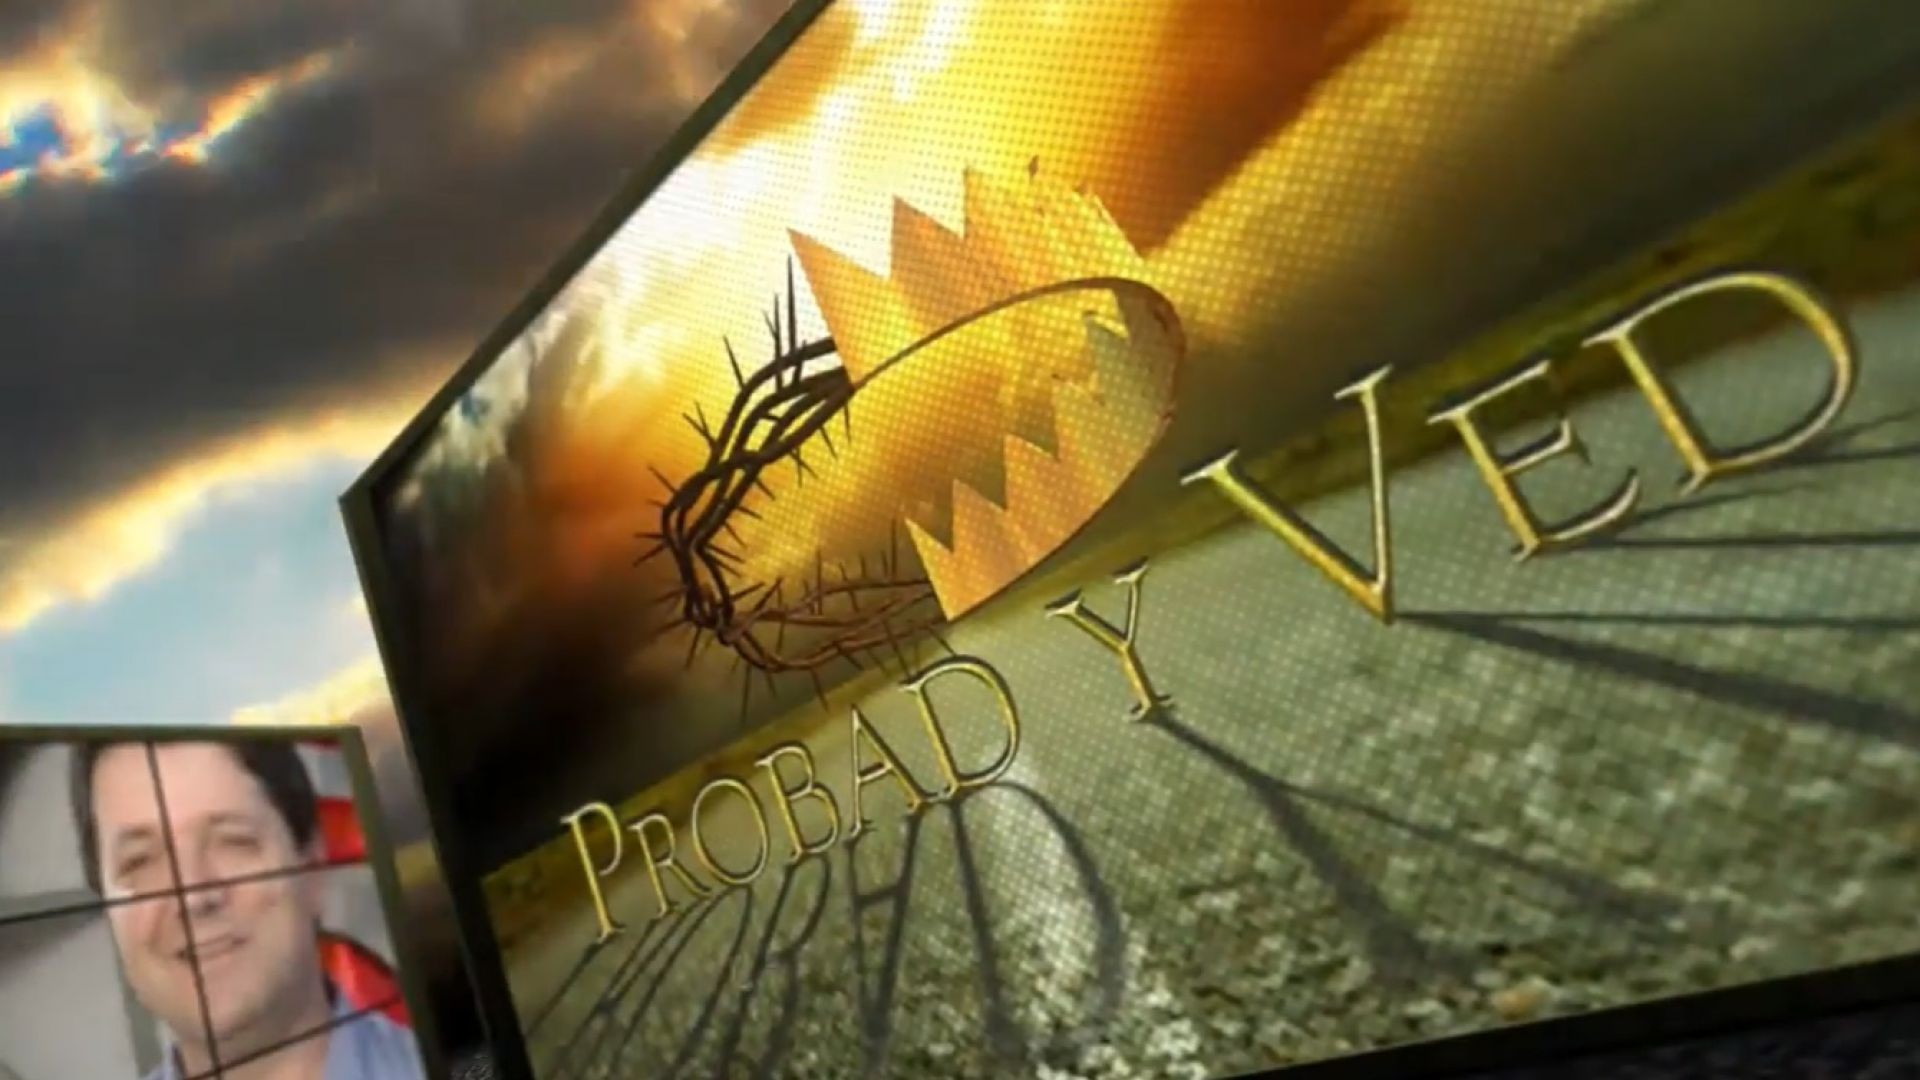 ⁣Probad y Ved 2012 -  Hoy fidelidad mañana eternidad